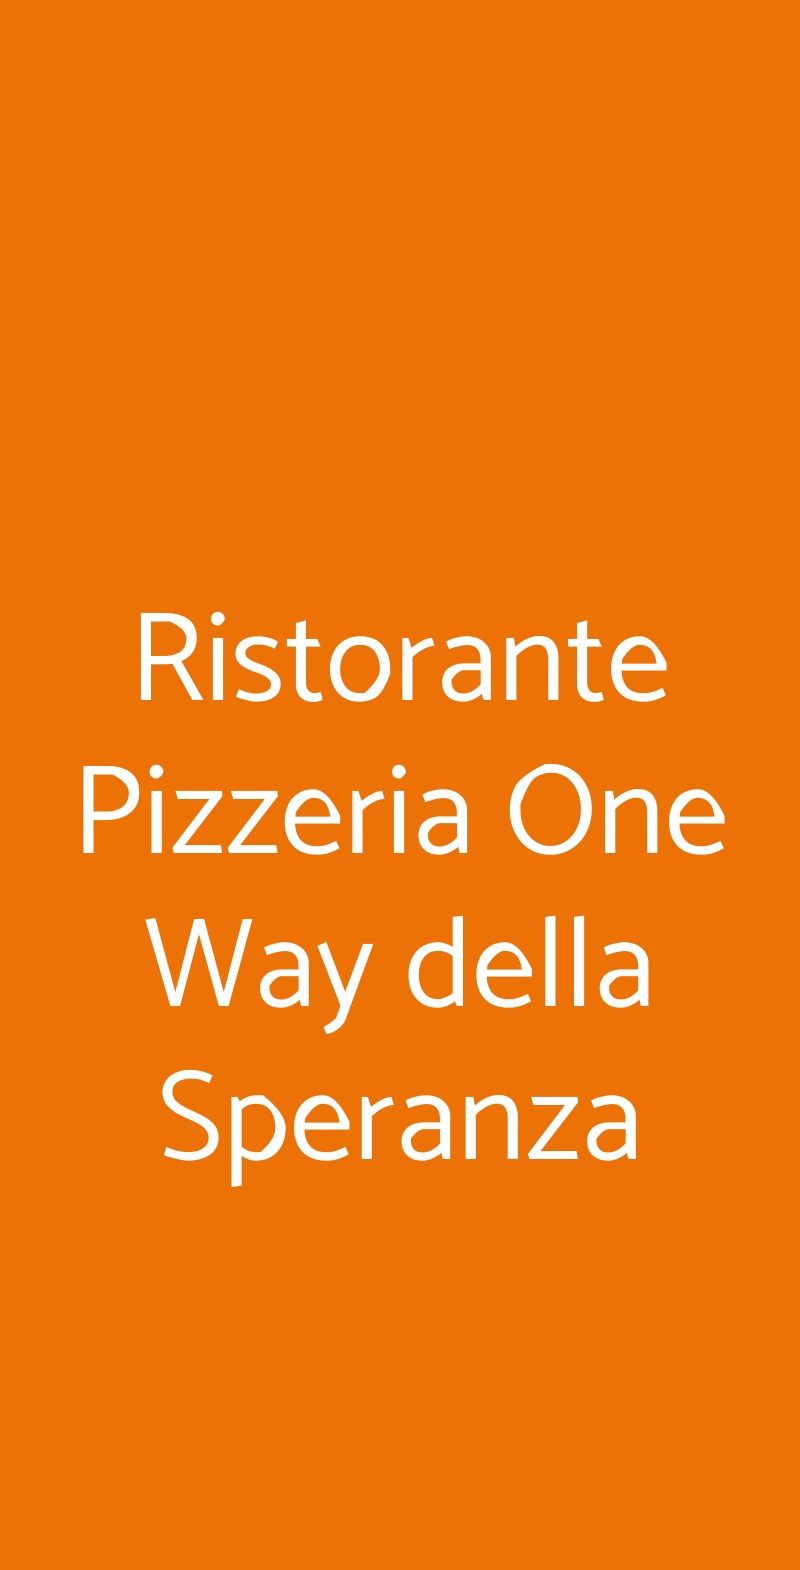 Ristorante Pizzeria One Way della Speranza Milano menù 1 pagina